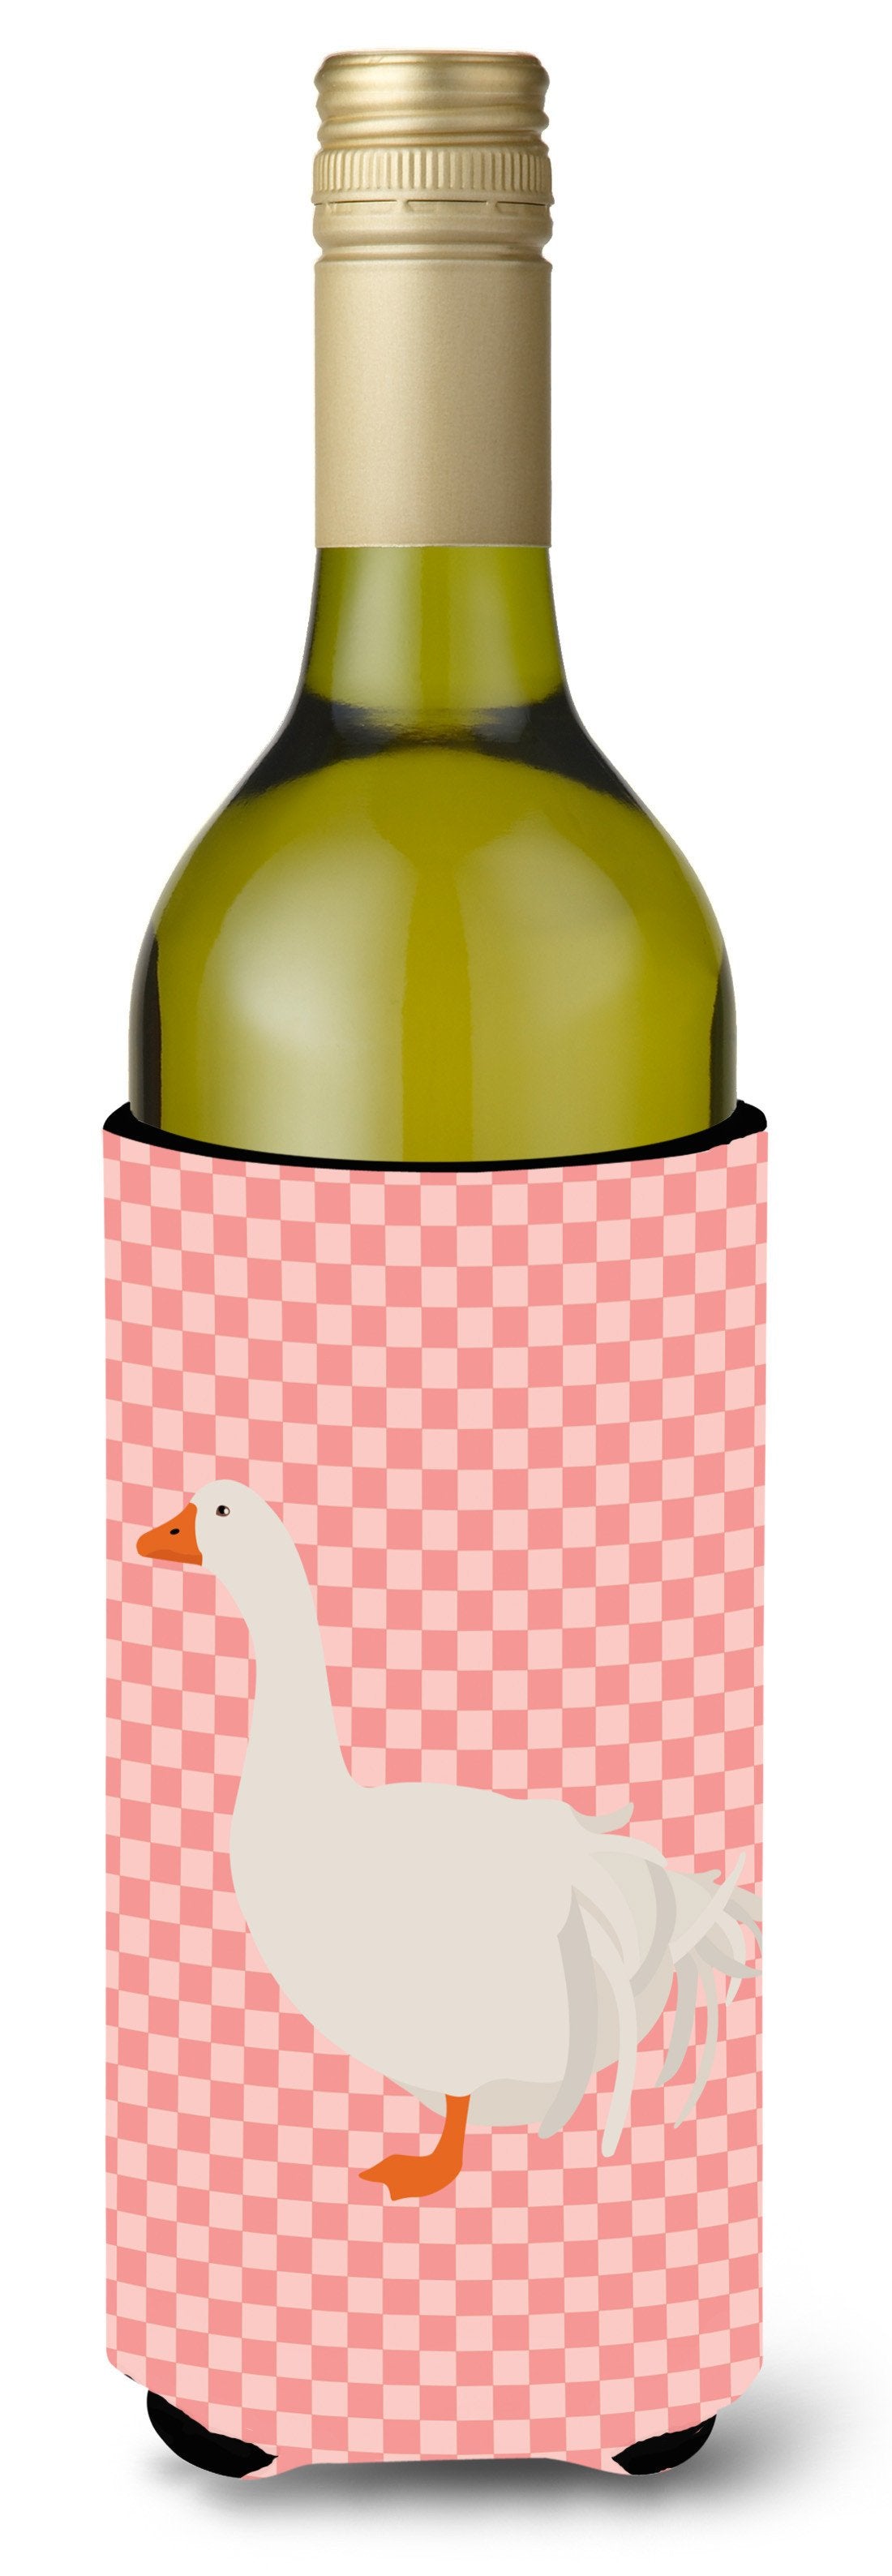 Sebastopol Goose Pink Check Wine Bottle Beverge Insulator Hugger BB7902LITERK by Caroline&#39;s Treasures